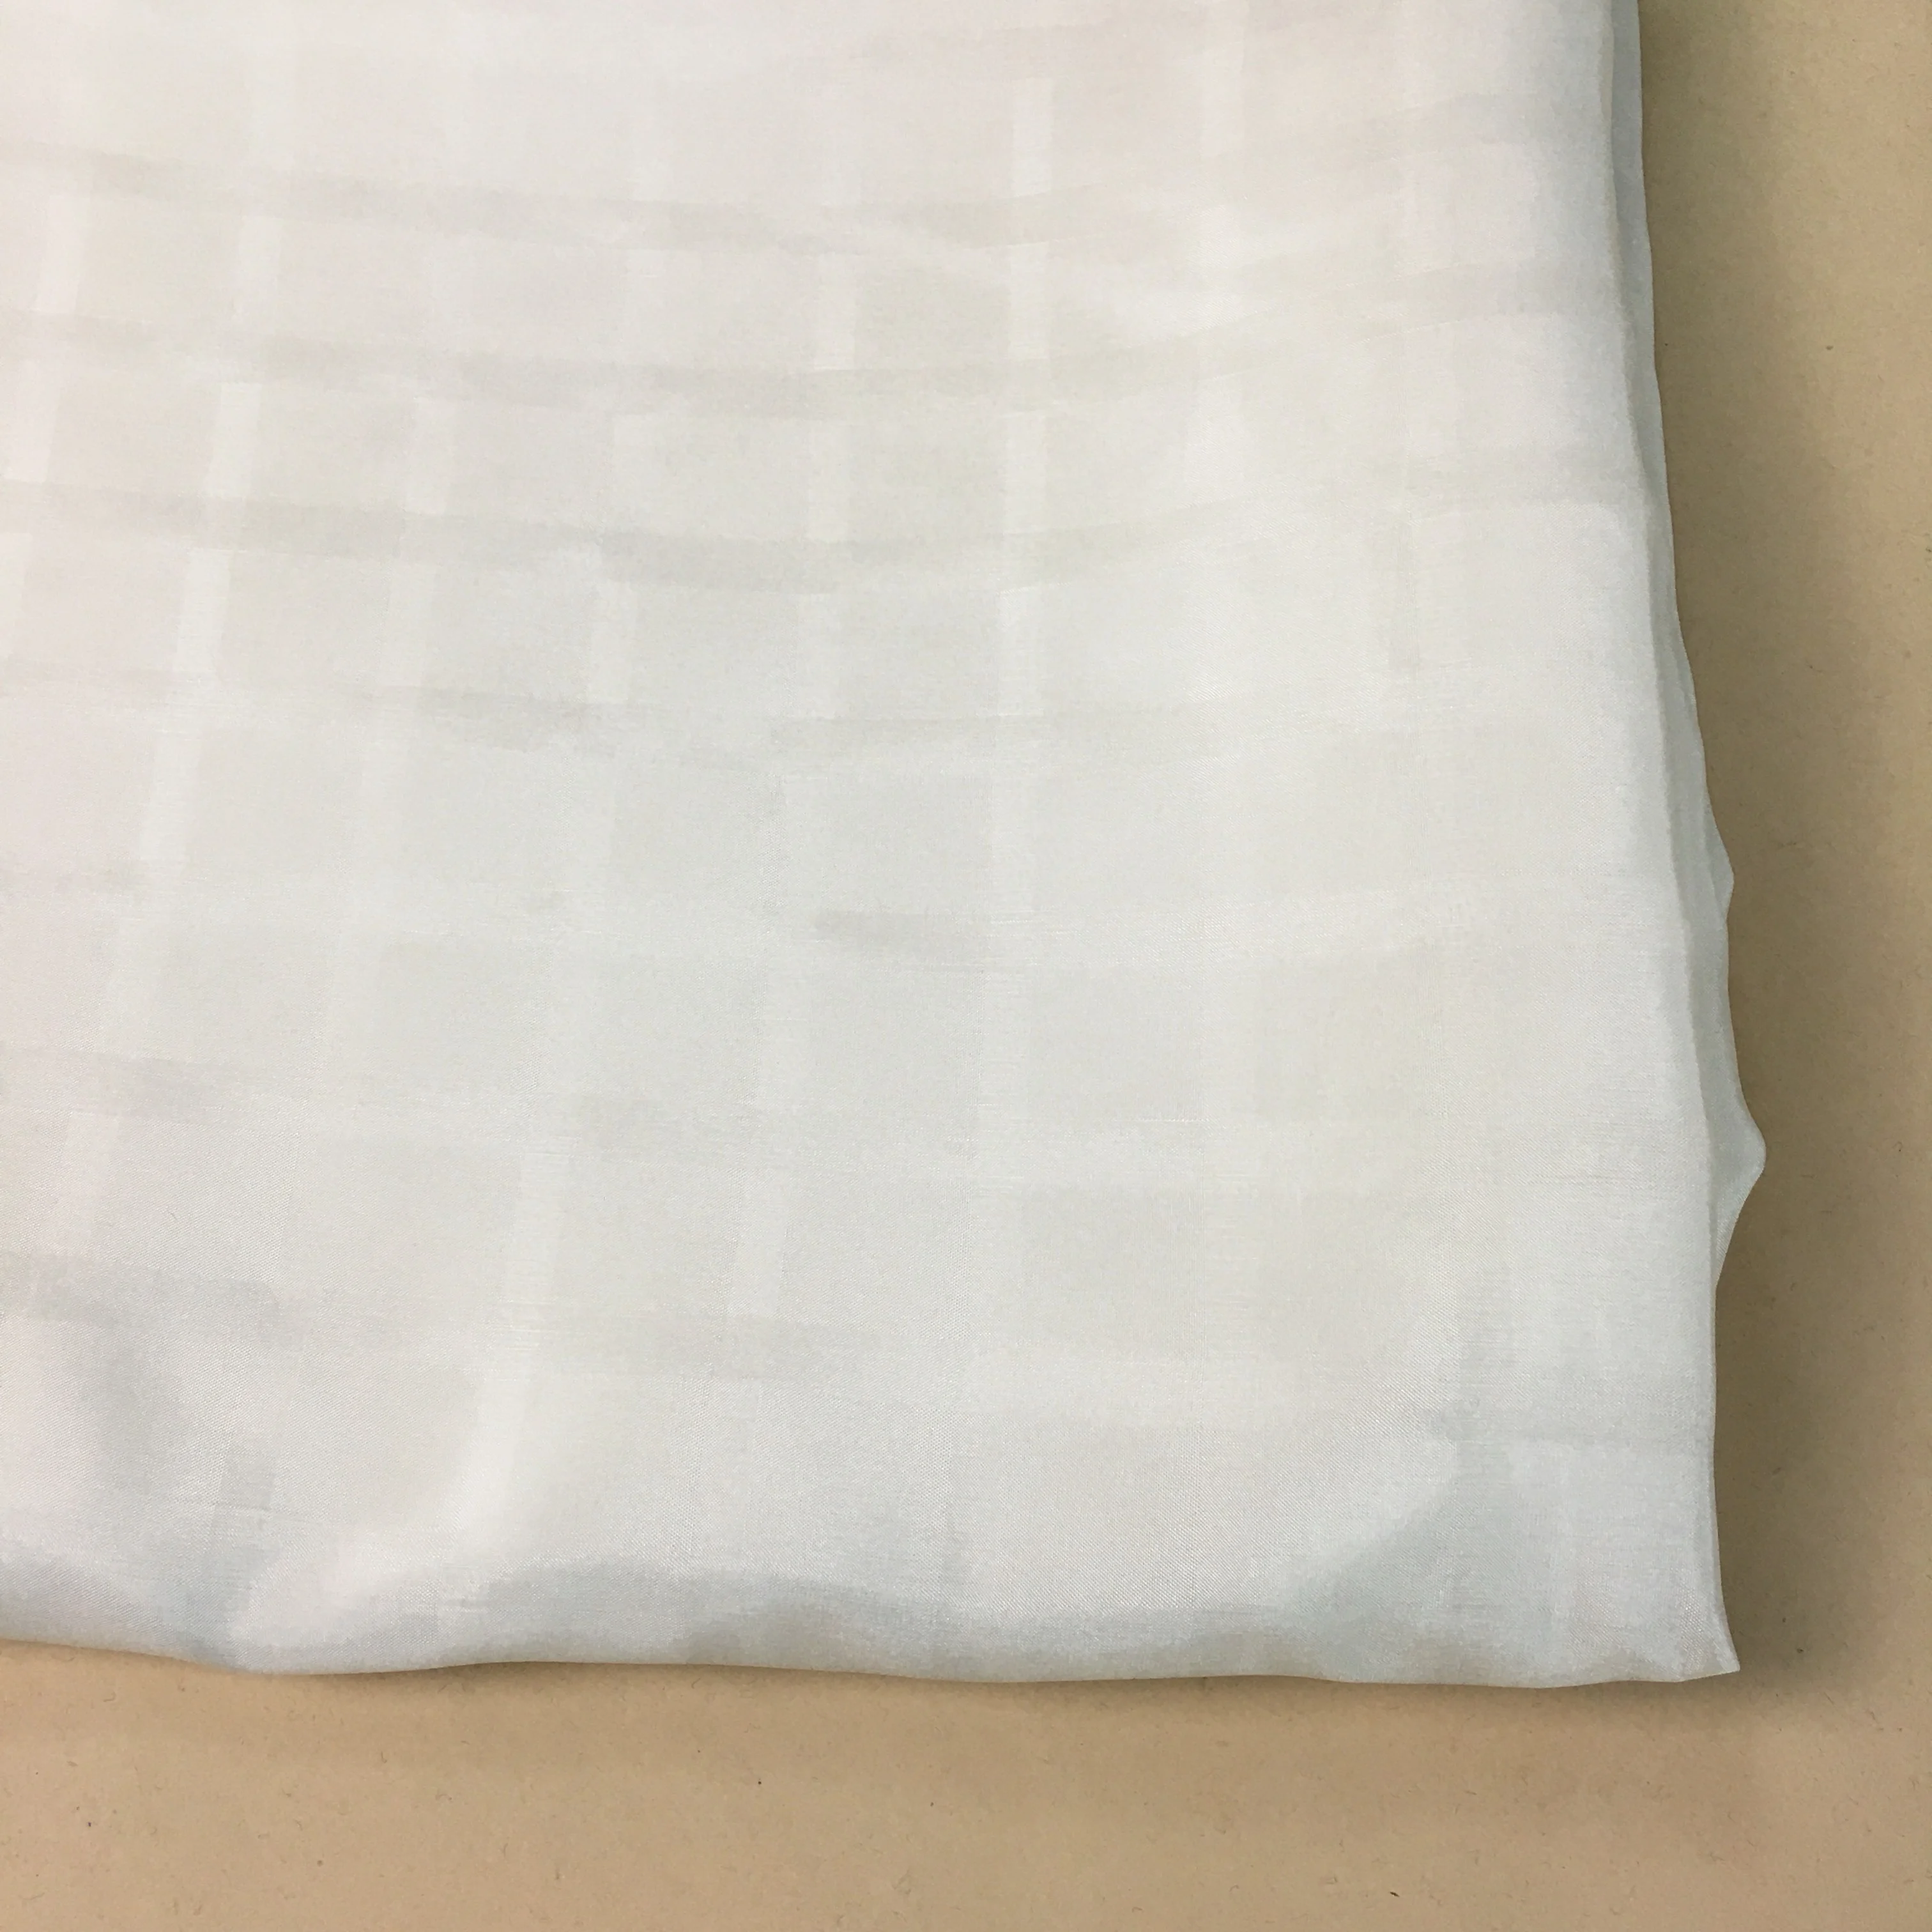 Добби шелковая ткань хаботай, ширина: 114 см, толщина: 12 мм, цвет: бежевый-белый, длина: 523 см,# y59